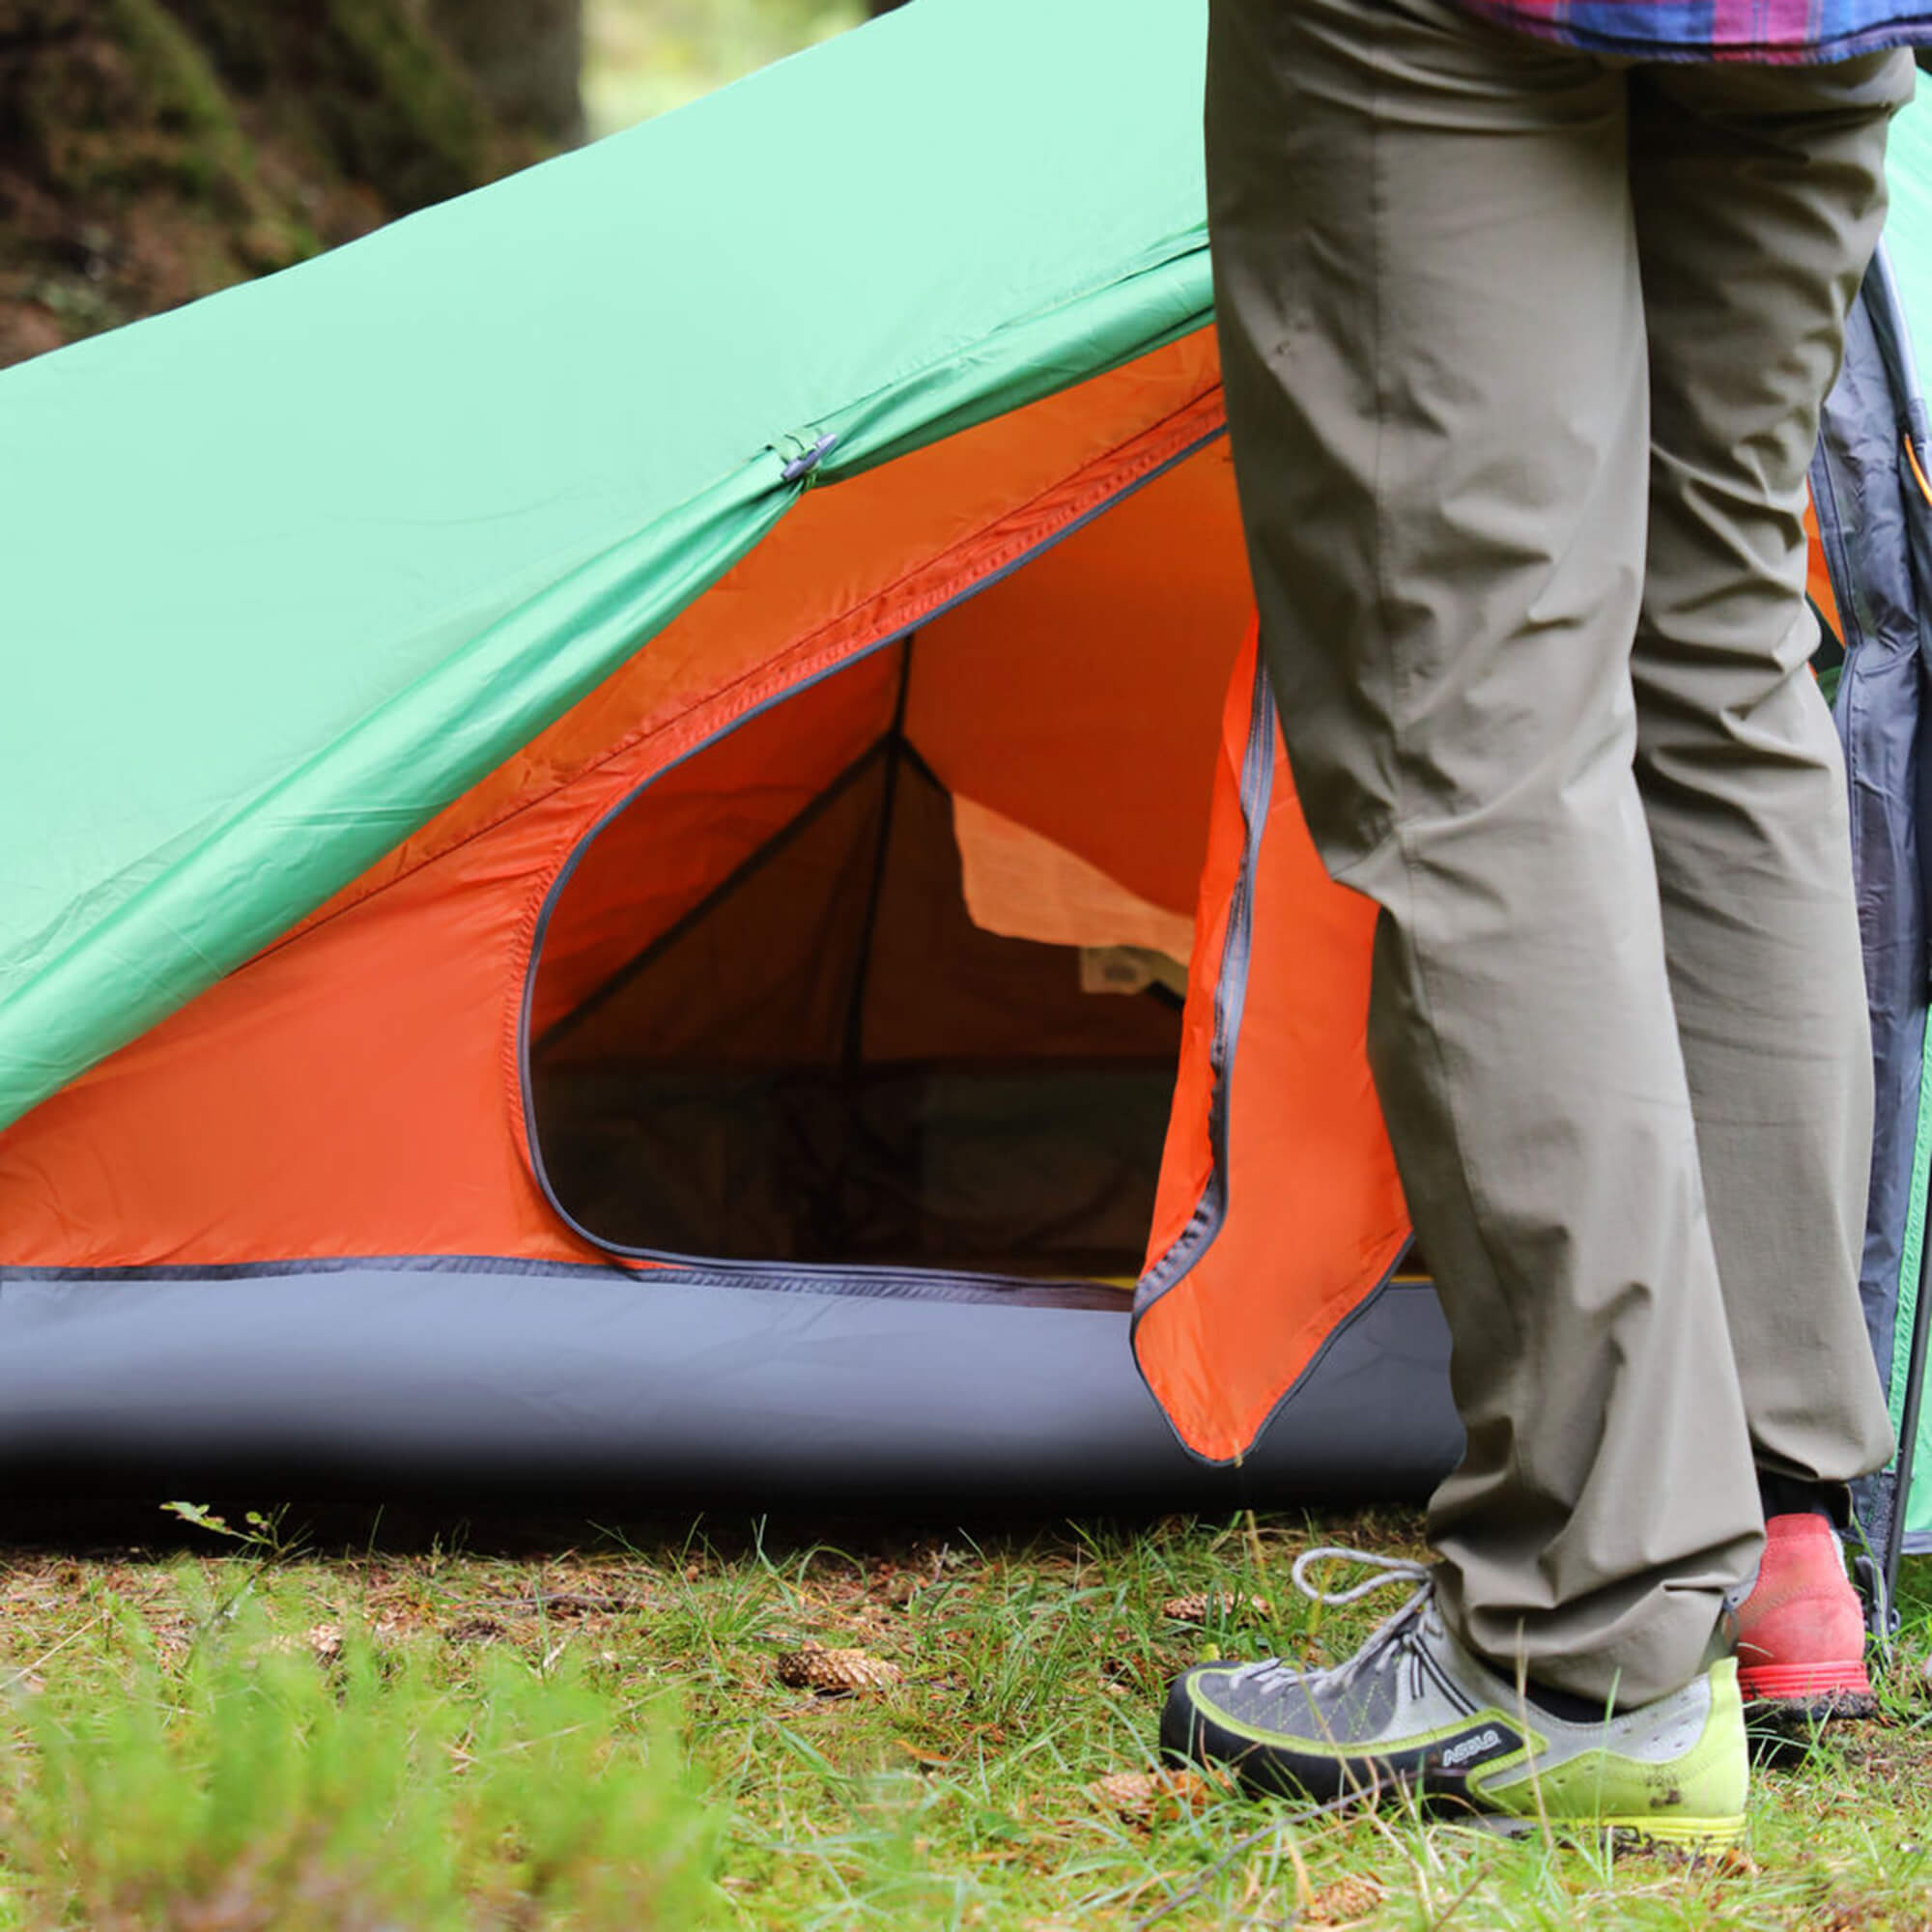 Vango Nevis 100 Lightweight Hiking Tent 